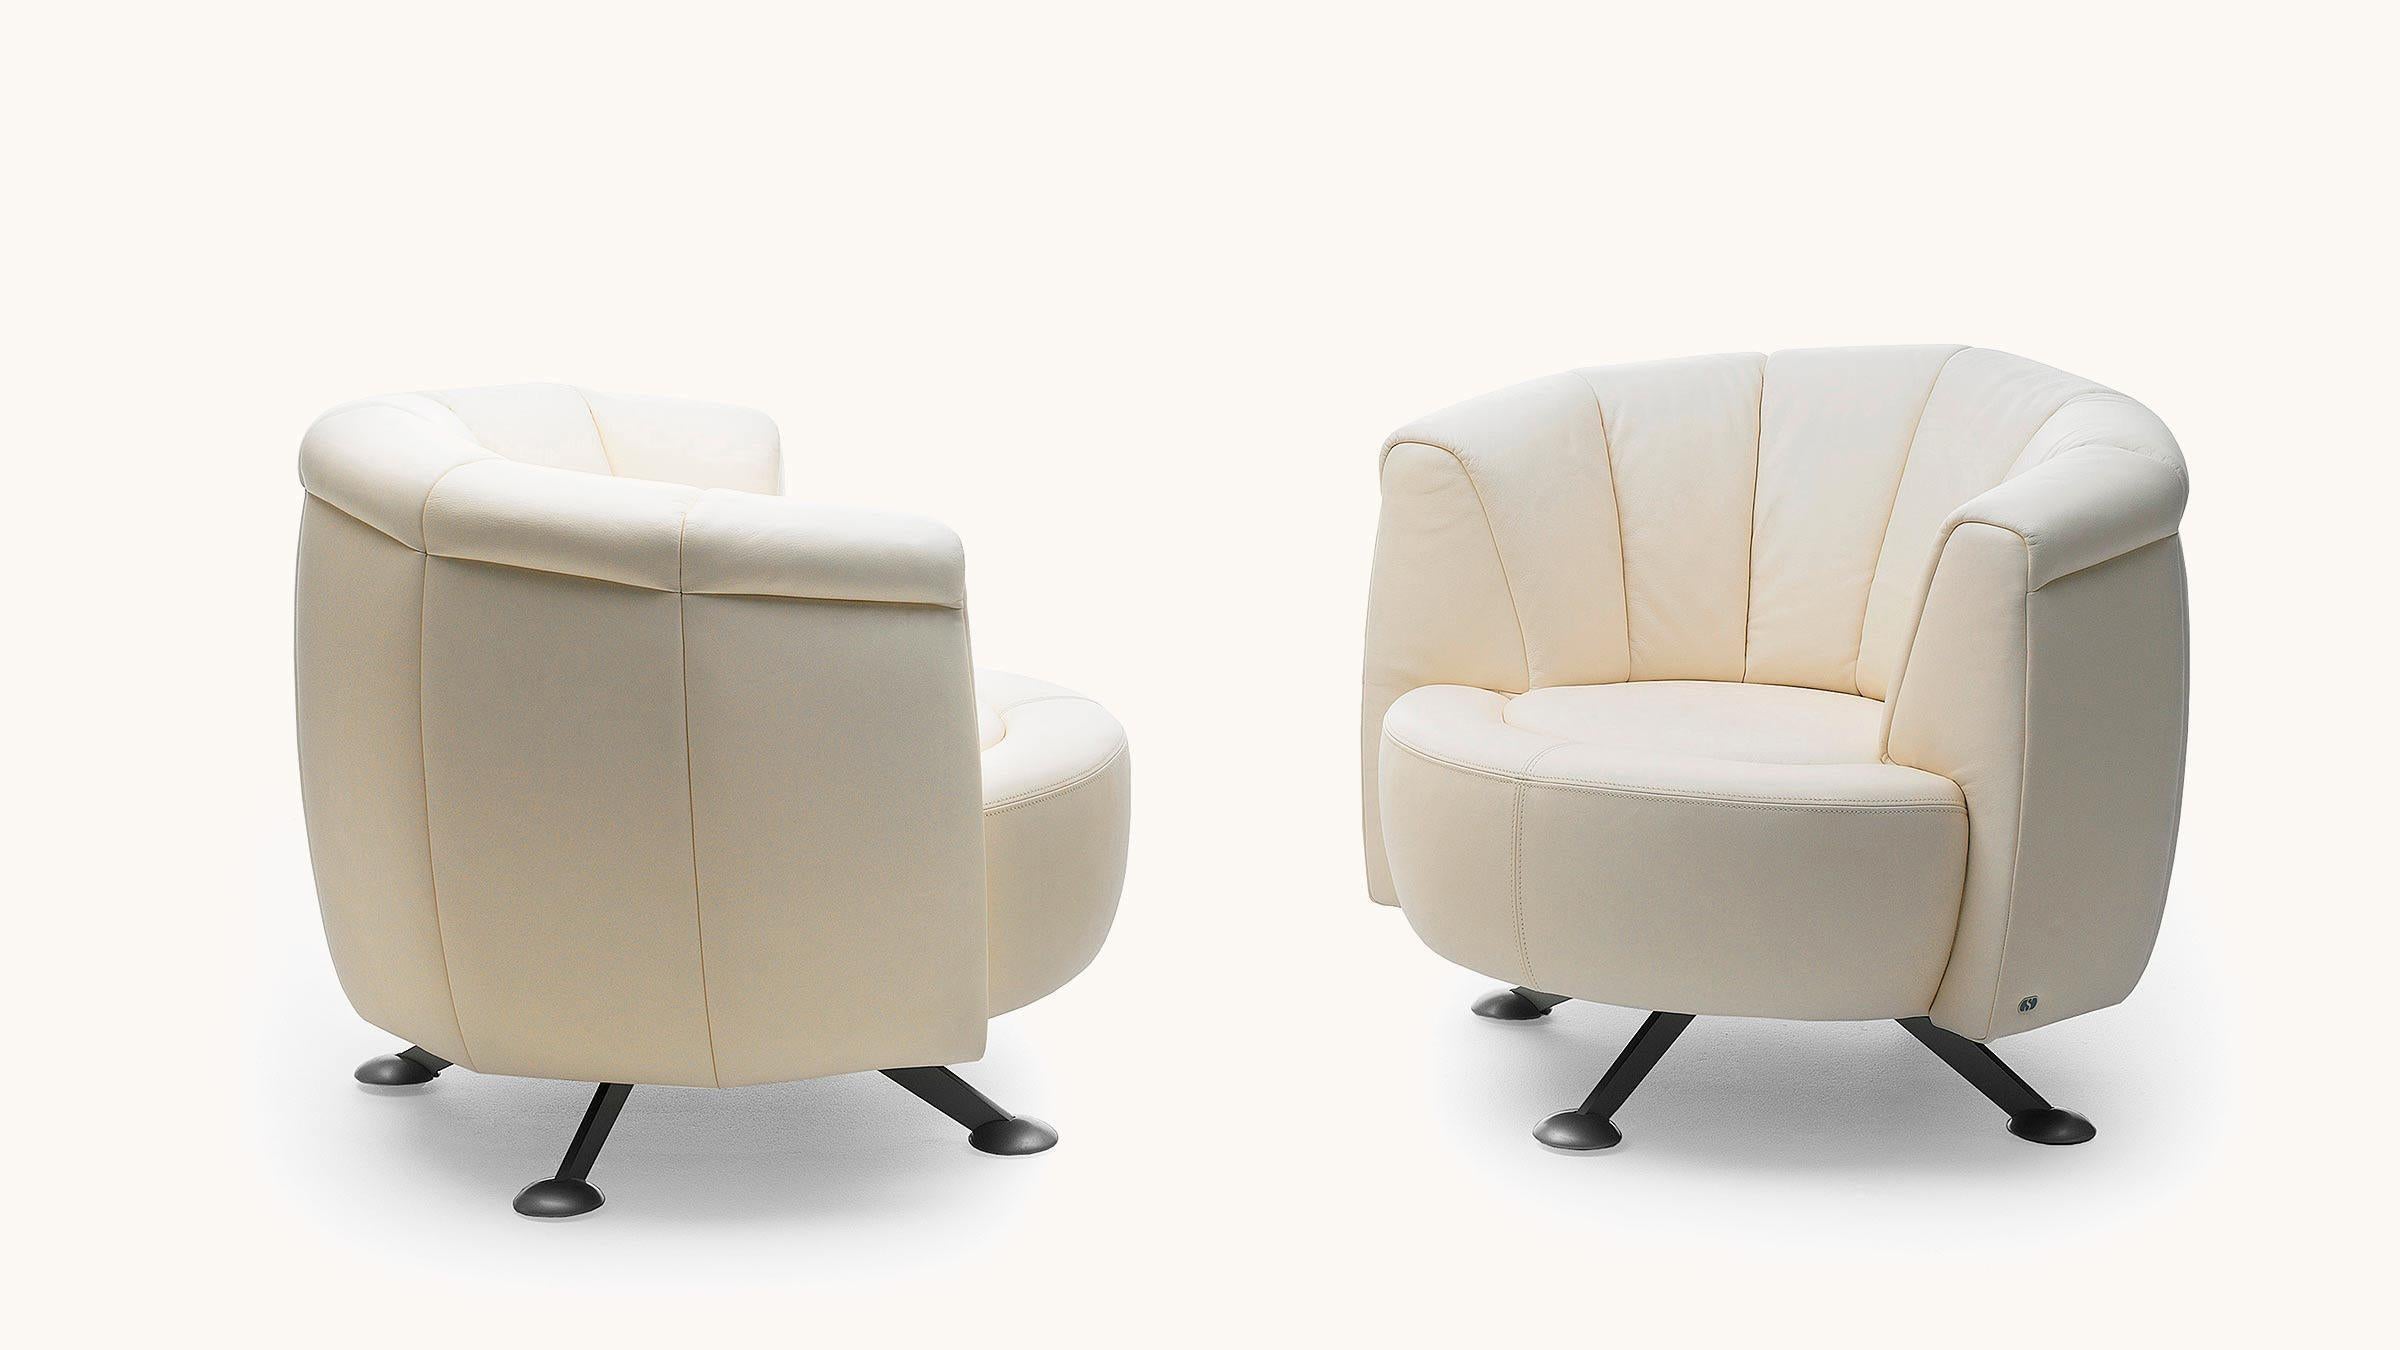 Der revolutionäre Rückenschiebemechanismus DS-164 kann mit einem einzigen Handgriff von einem offenen Sofa in eine elegante Chaiselongue verwandelt werden, während die Rückenlehne stilvoll um 360° gedreht werden kann. Die modulare Sitzinsel, die